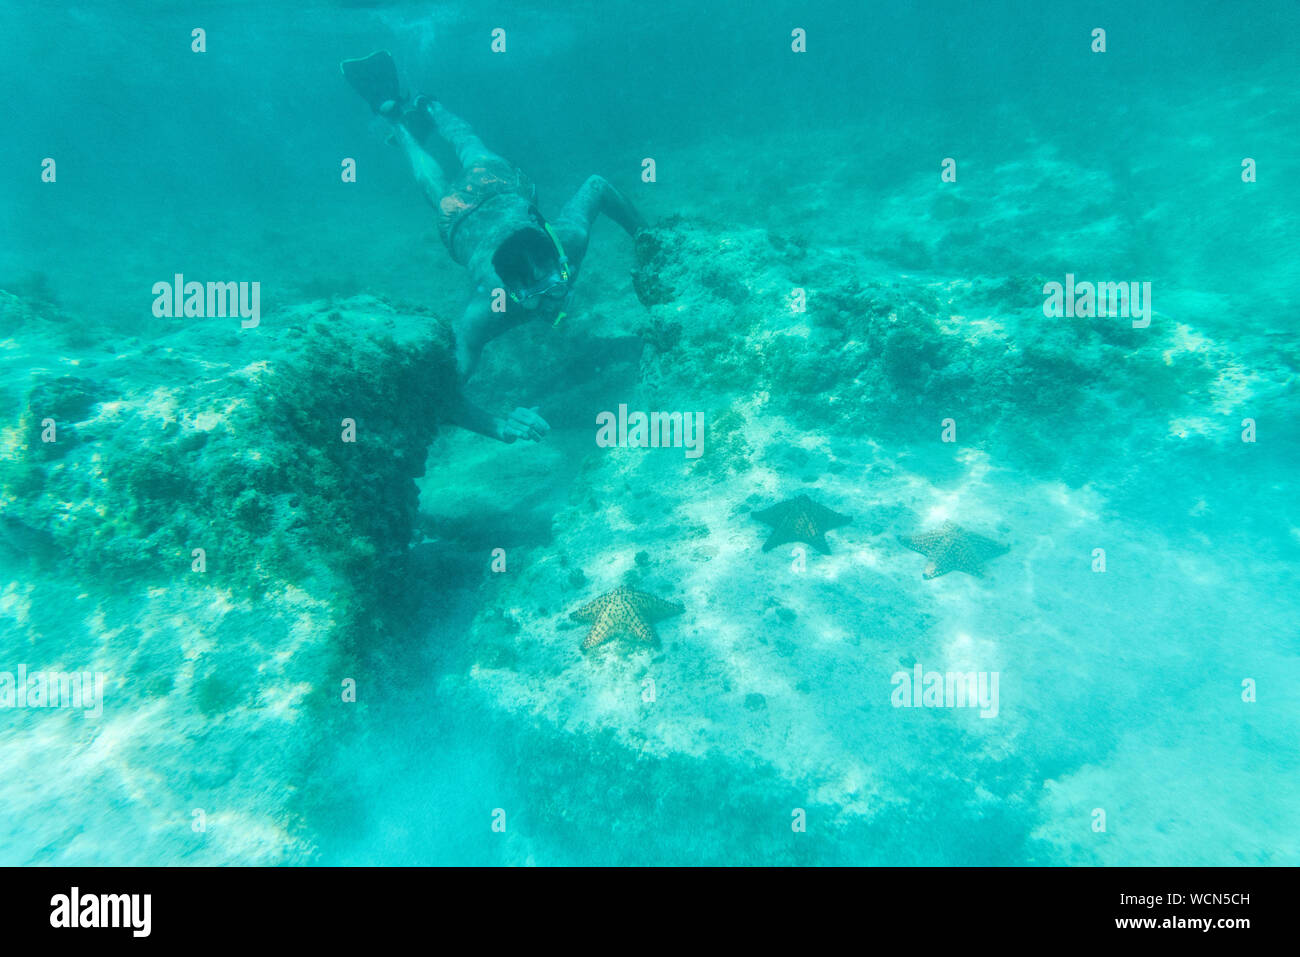 Plongée en eau profonde de l'homme regarde les étoiles de mer et des récifs coralliens, des Caraïbes, Antilles, Amérique Centrale Banque D'Images